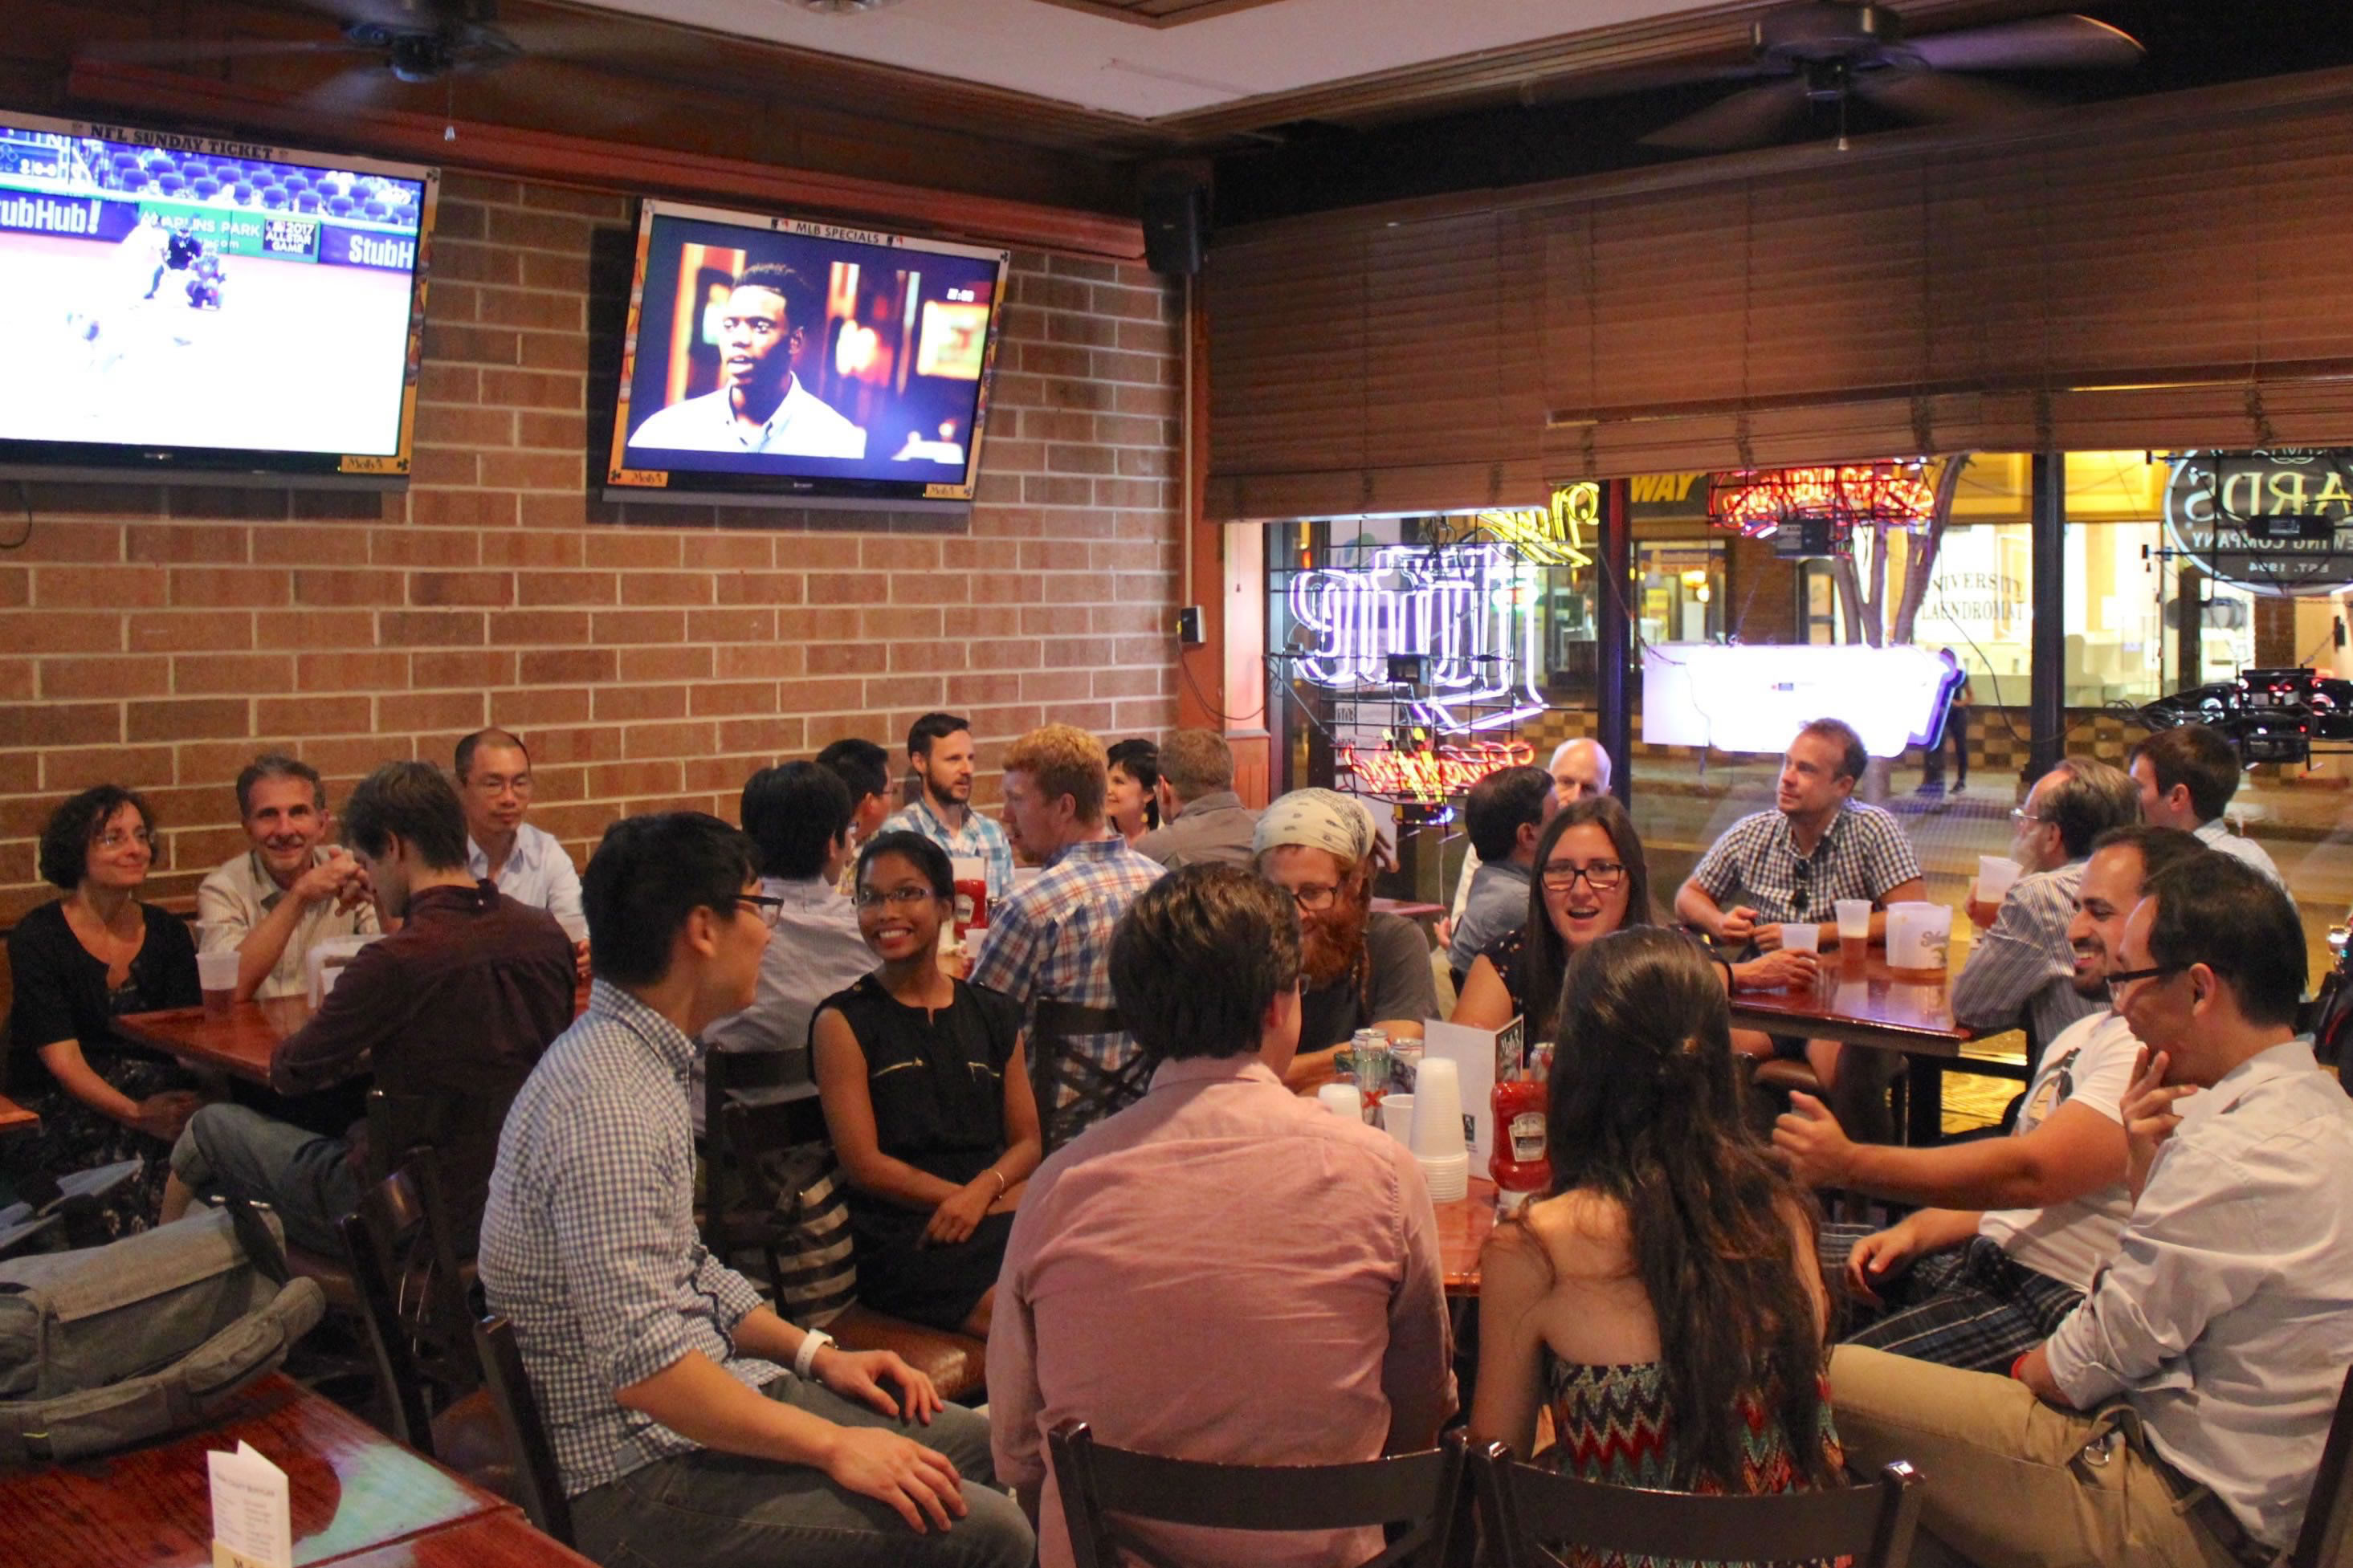 Attendees meet at a bar